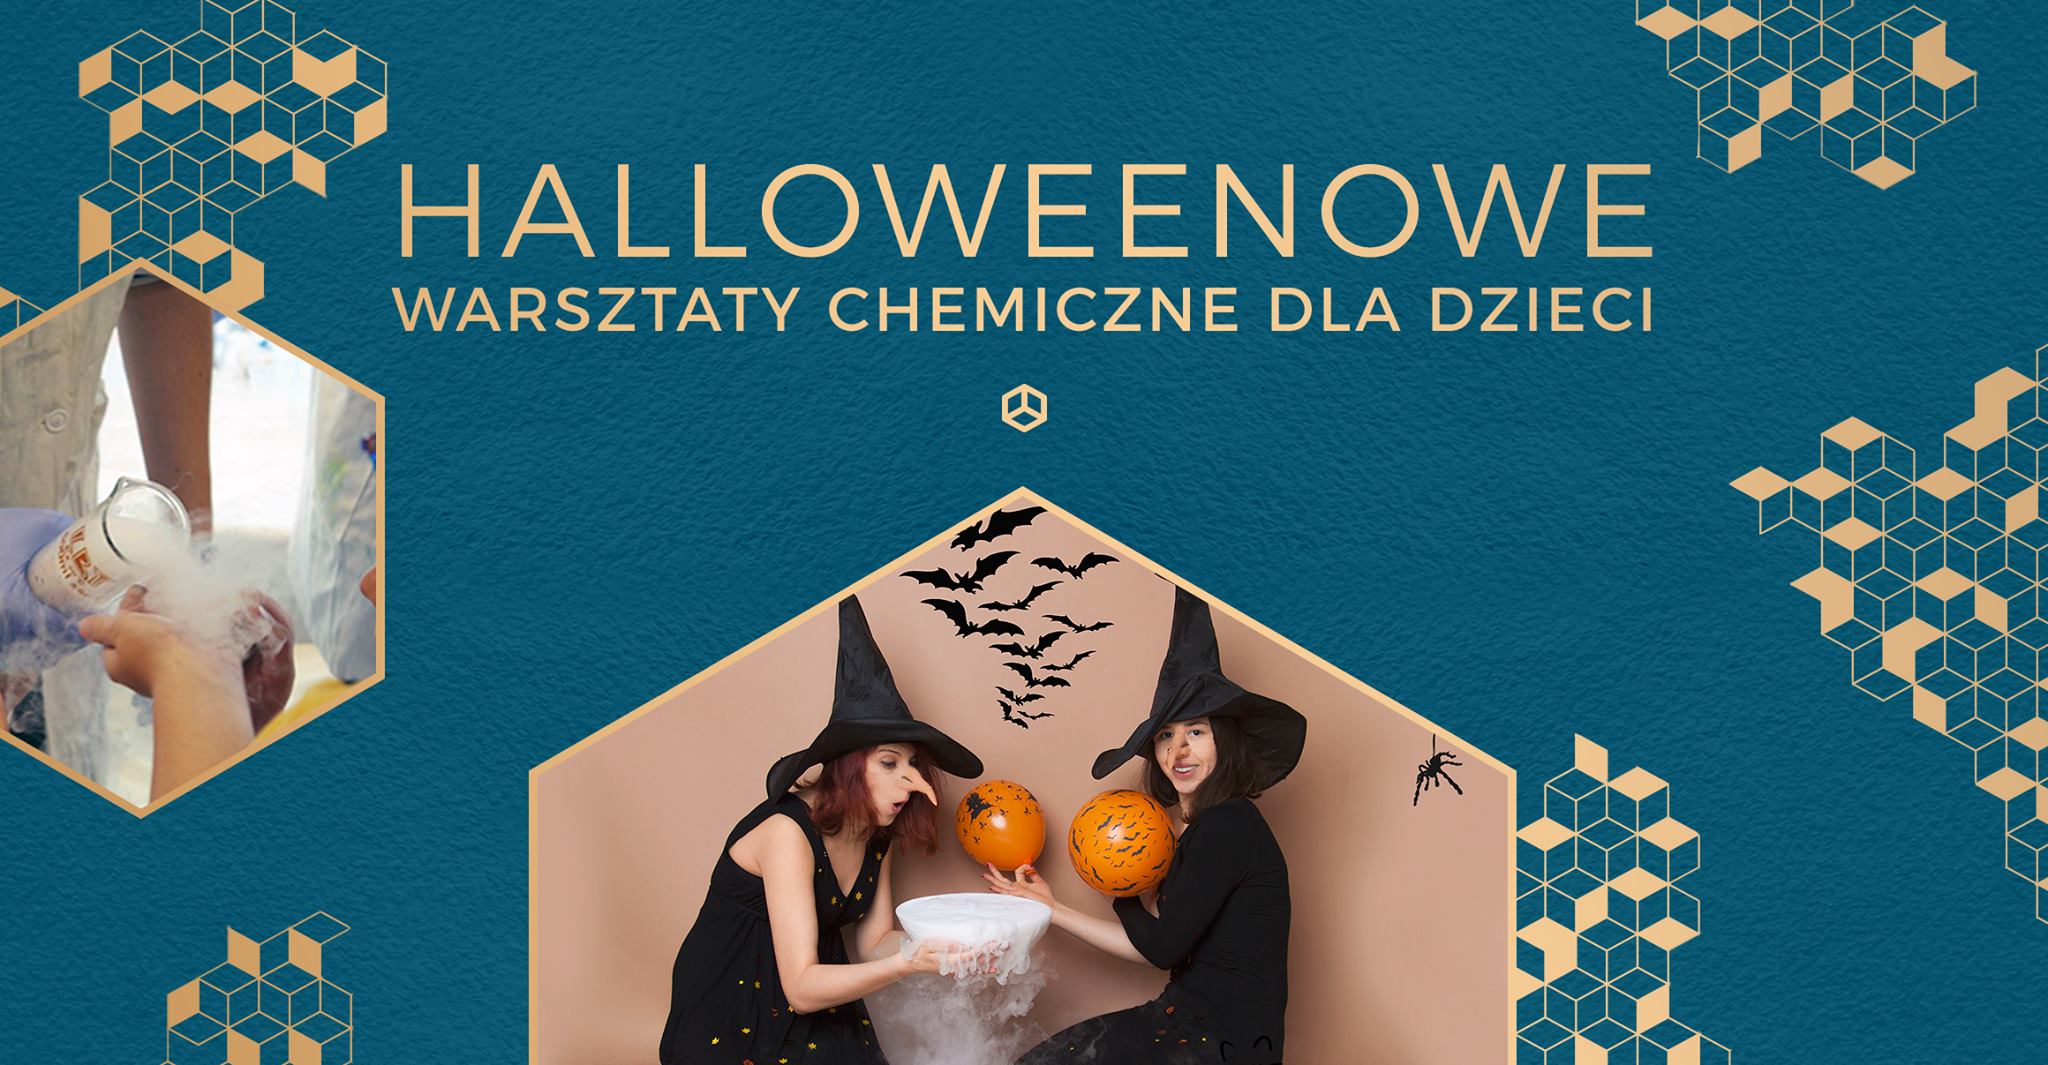 Halloweenowe warsztaty chemiczne dla dzieci w Mozaice